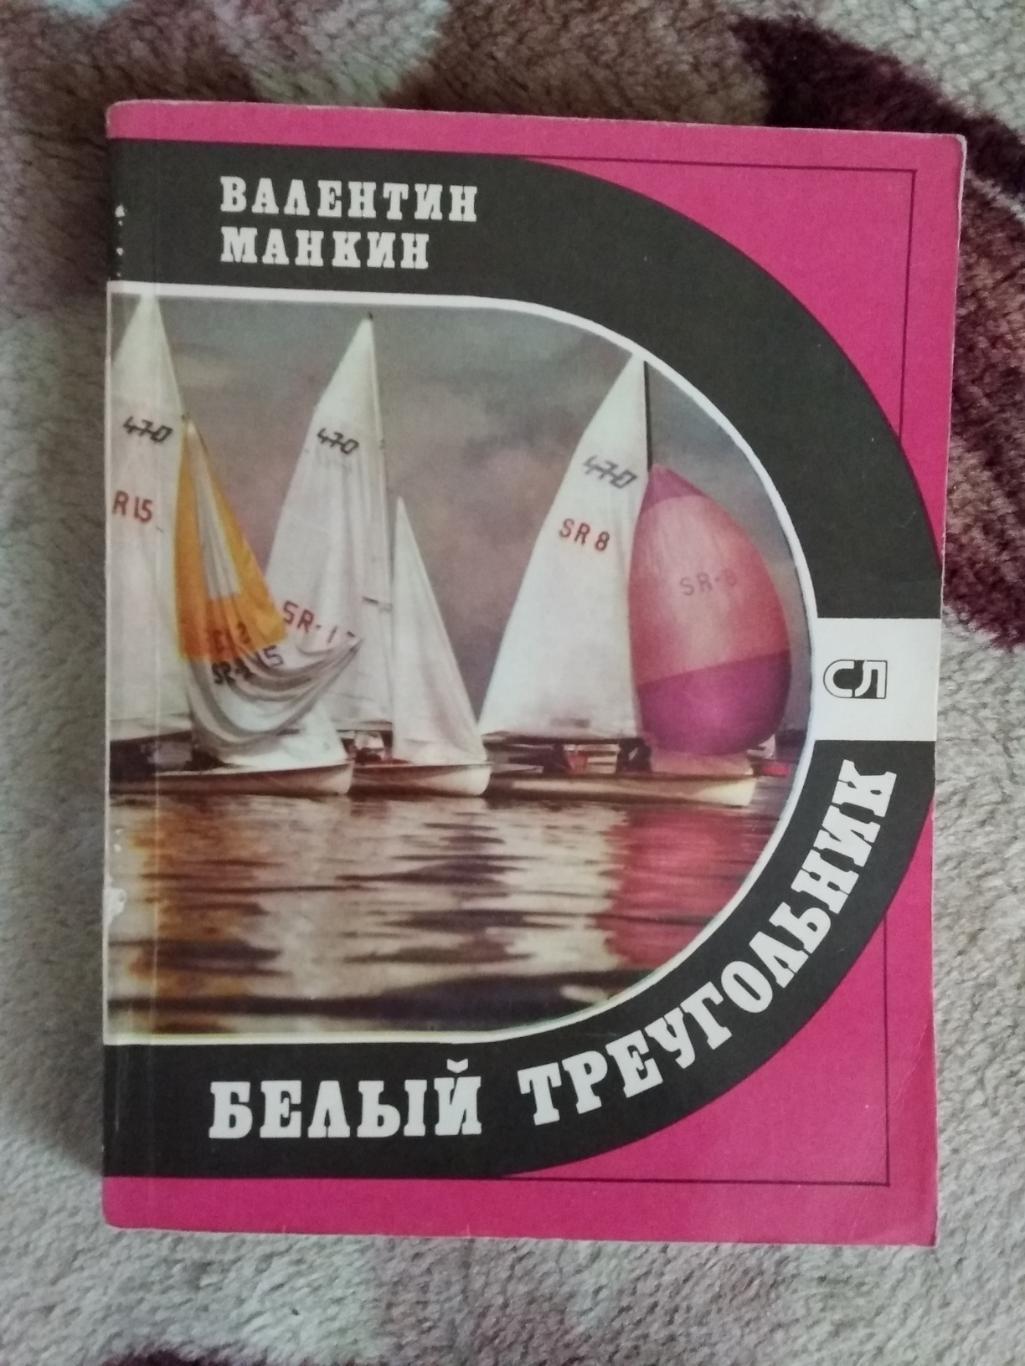 В.Манкин.Белый треугольник.Серия Спорт и личность.Мол.гвардия 1981.